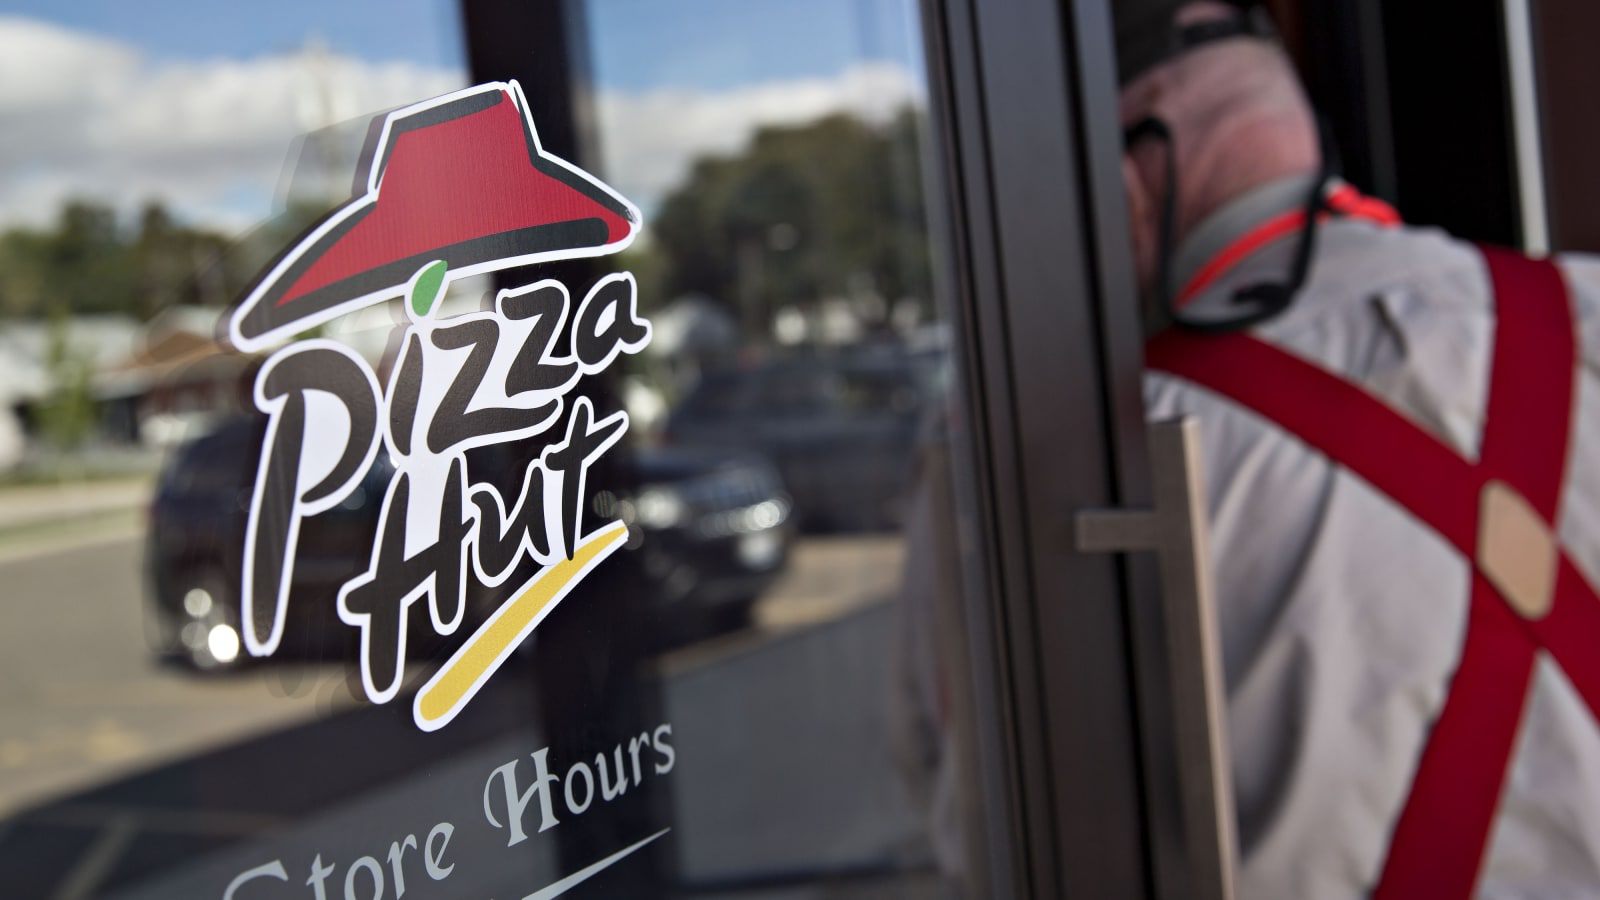 Pizza Hut đóng cửa khoảng 300 cửa hàng tại Mỹ